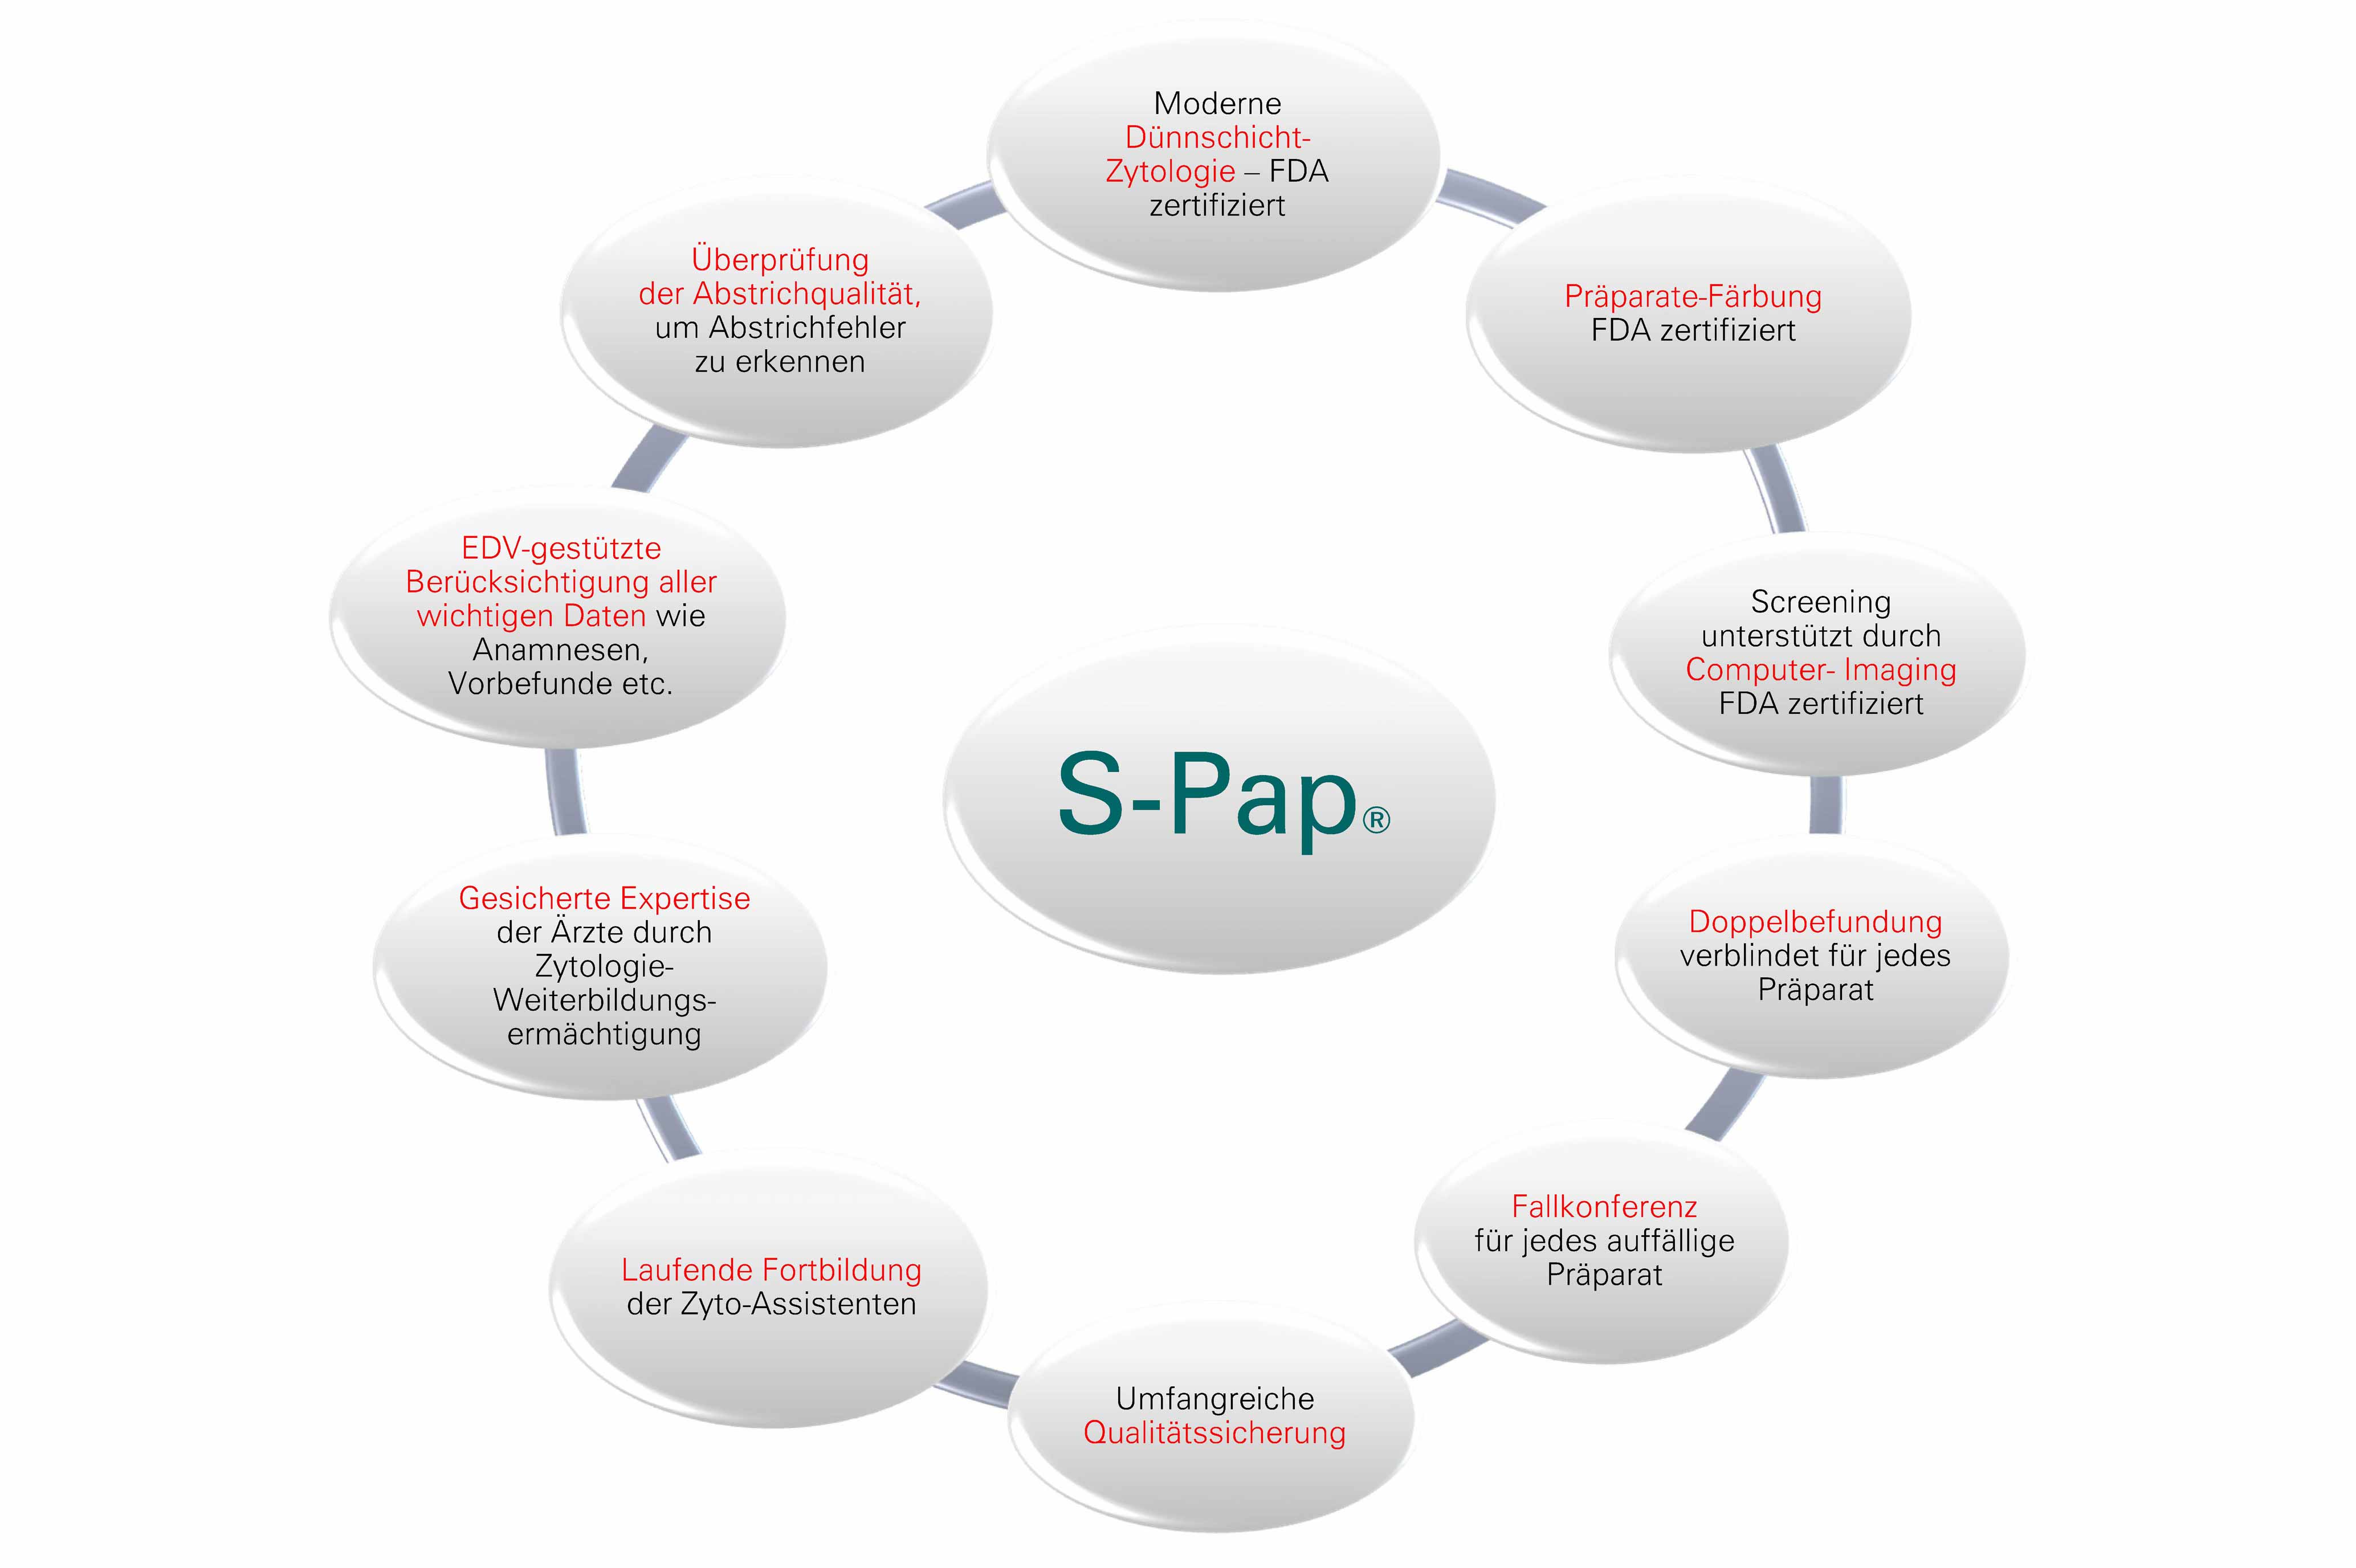 Der S-Pap unterscheidet sich vom Pap-Test in der Zellentnahme und Zelluntersuchung. Dadurch ist die Sicherheit der Befundung gegenüber dem konventionellen Abstrich deutlich erhöht.